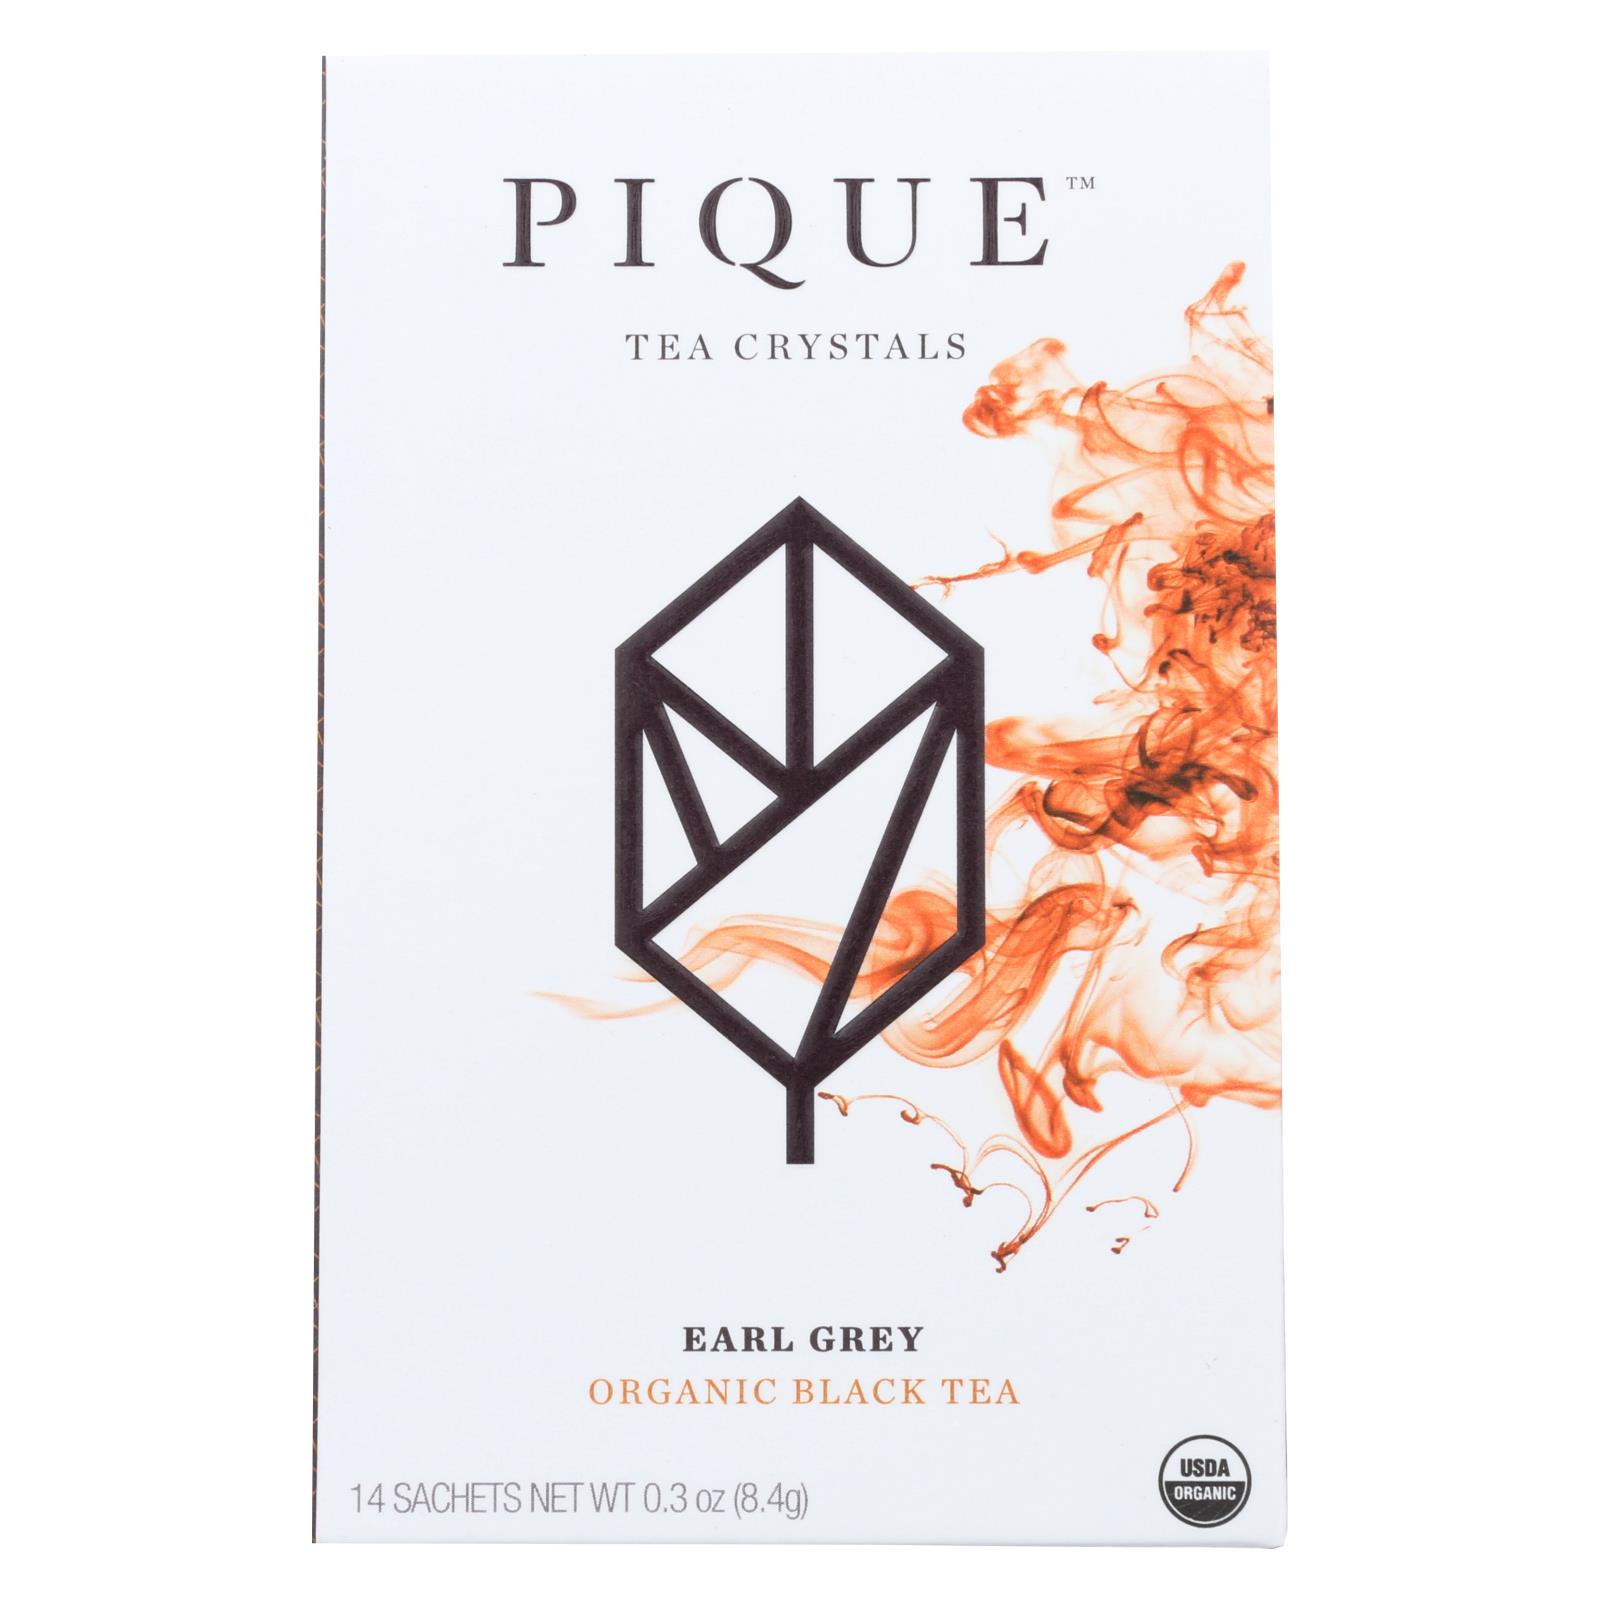 Pique Tea Crystals Organic Black Tea Earl Grey Flavor - Case of 6 - 14 CT